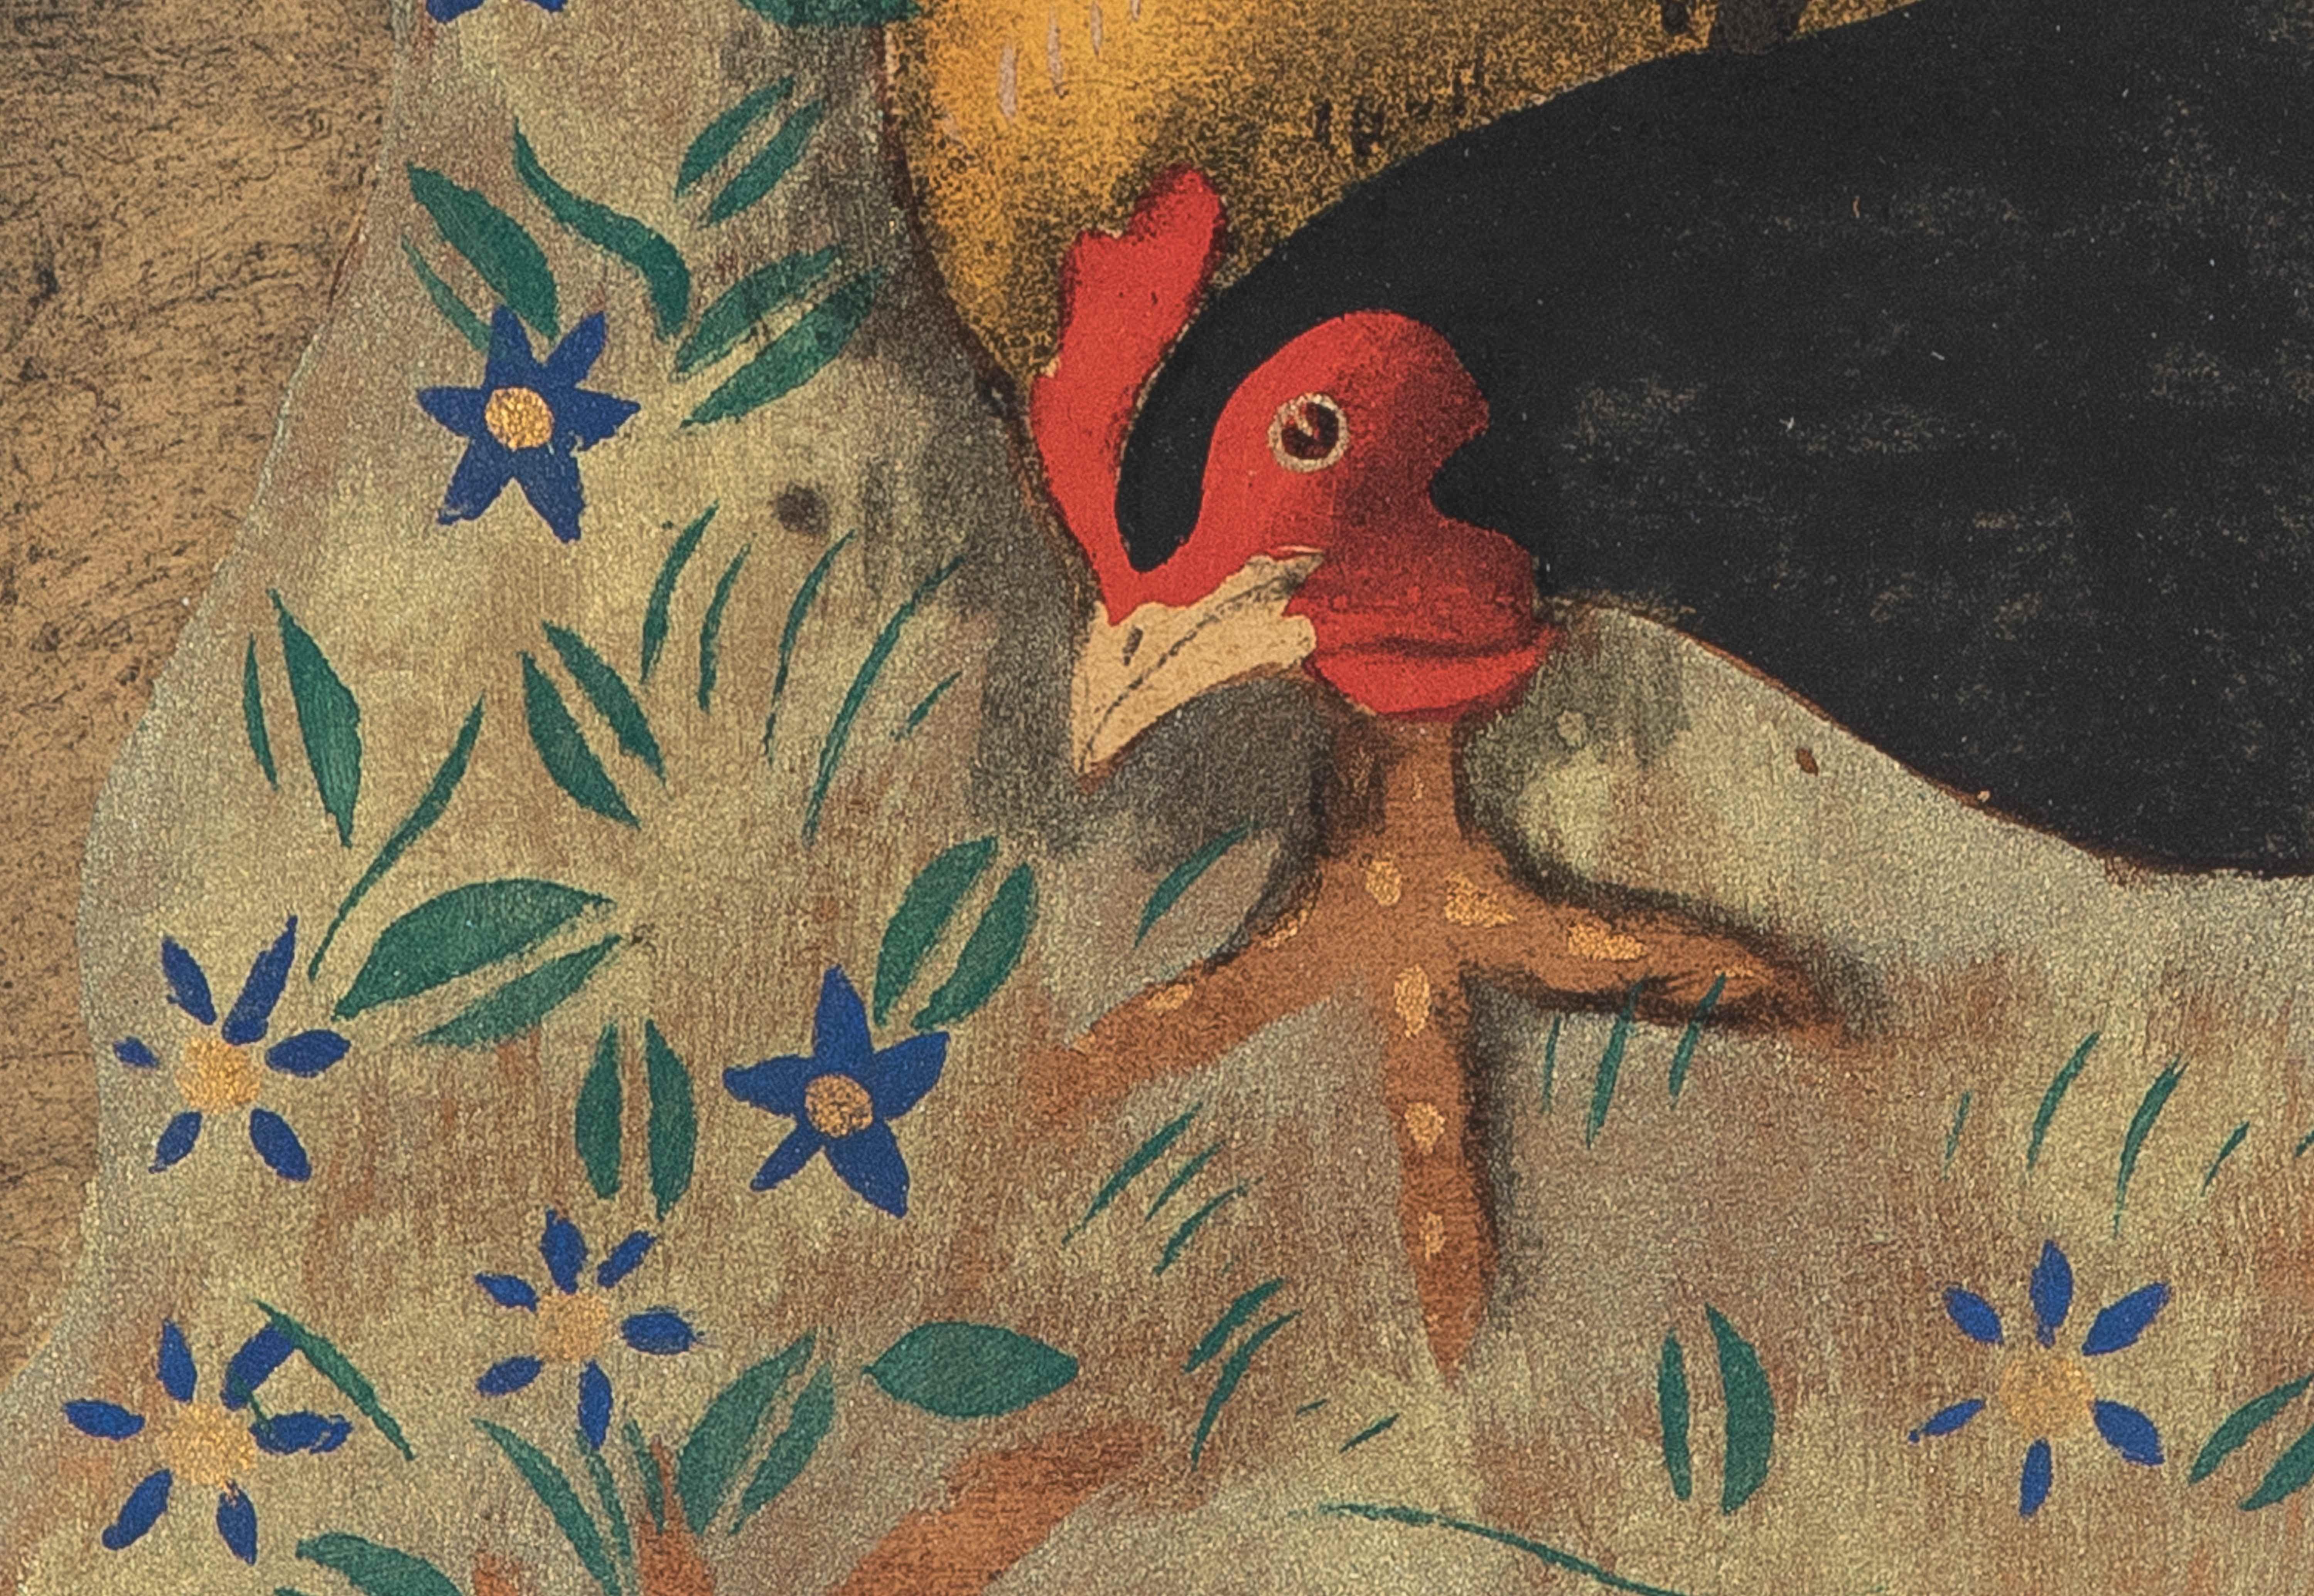 Les poules de Georges Manzana Pissarro (1871-19610)
Pochoir
30 x 46 cm (11 ³/₄ x 18 ¹/₈ pouces)
Signée avec le cachet de la succession Manzana Pissarro et numérotée 7/100 en bas à gauche.

Biographie de l'artiste :
Comme tous les artistes de la